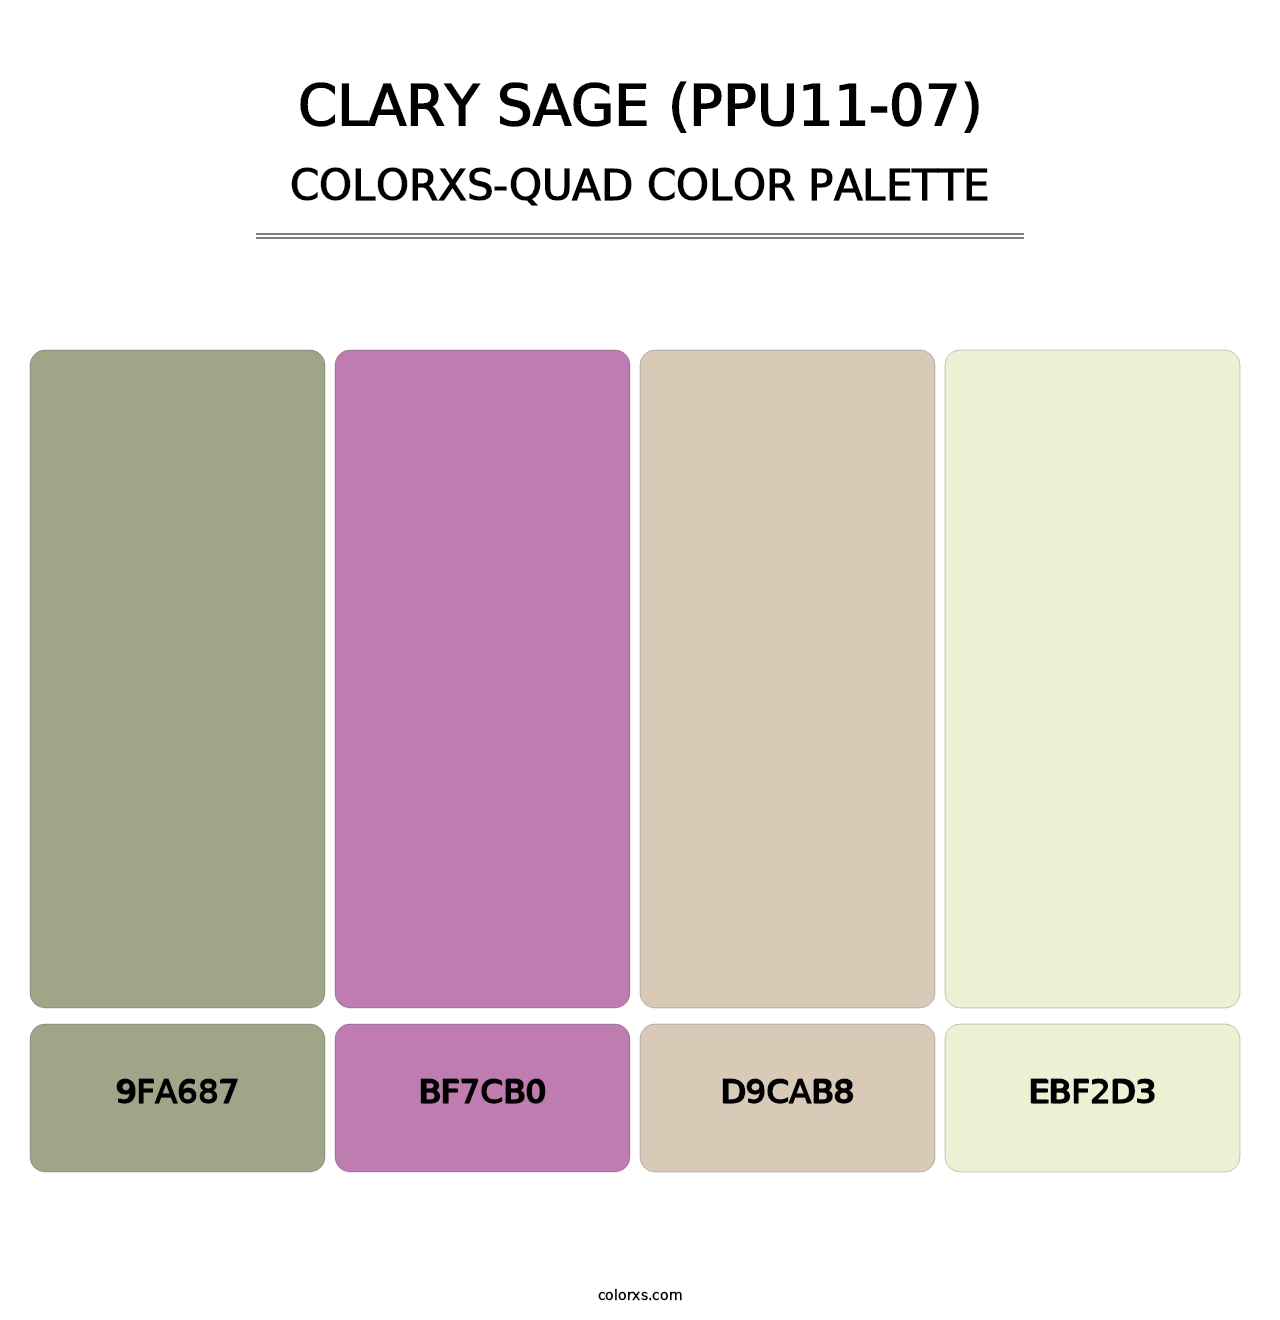 Clary Sage (PPU11-07) - Colorxs Quad Palette